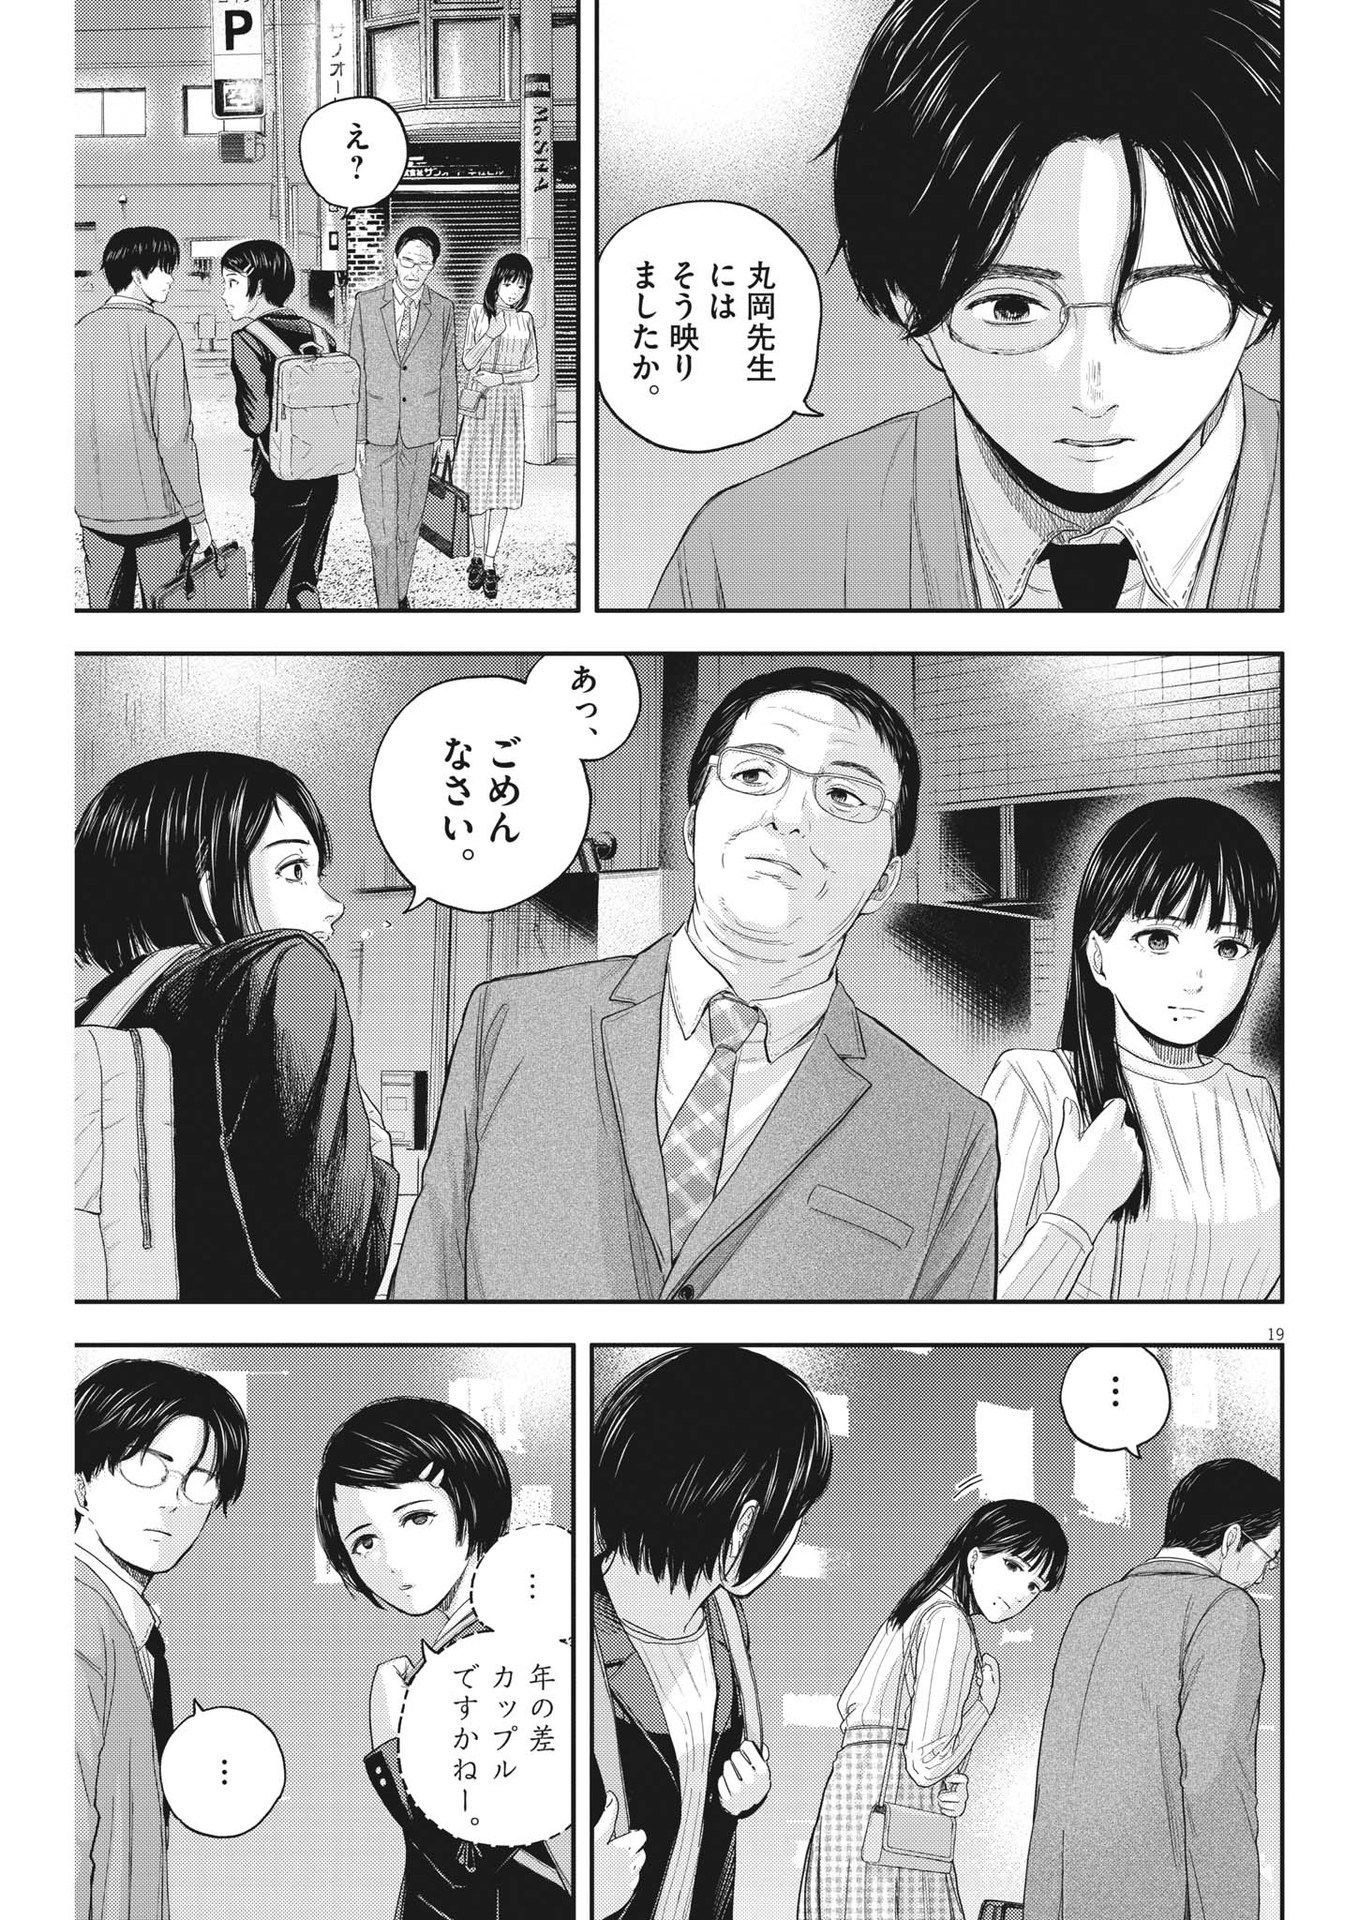 Yumenashi-sensei no Shinroshidou - Chapter 11 - Page 19